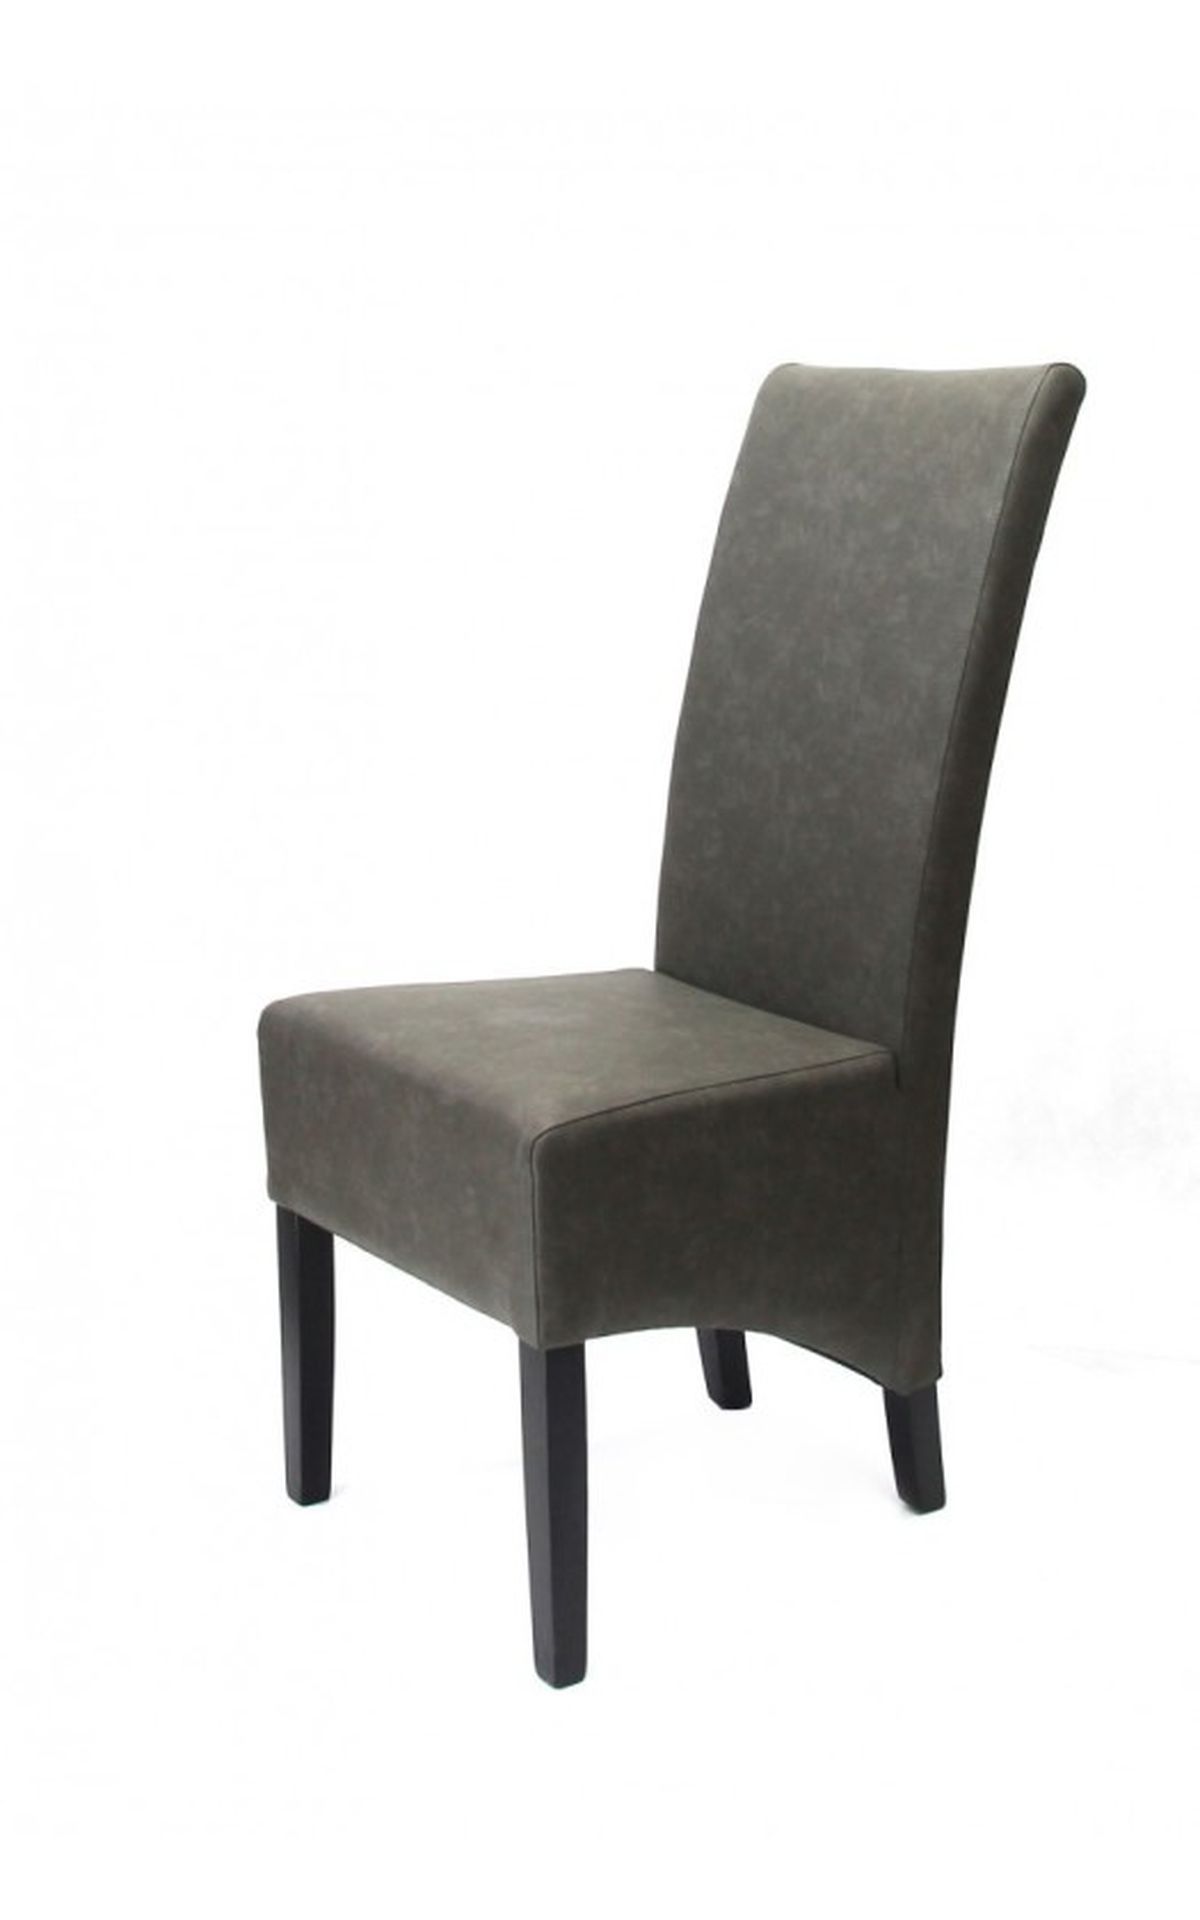 Pilat szék